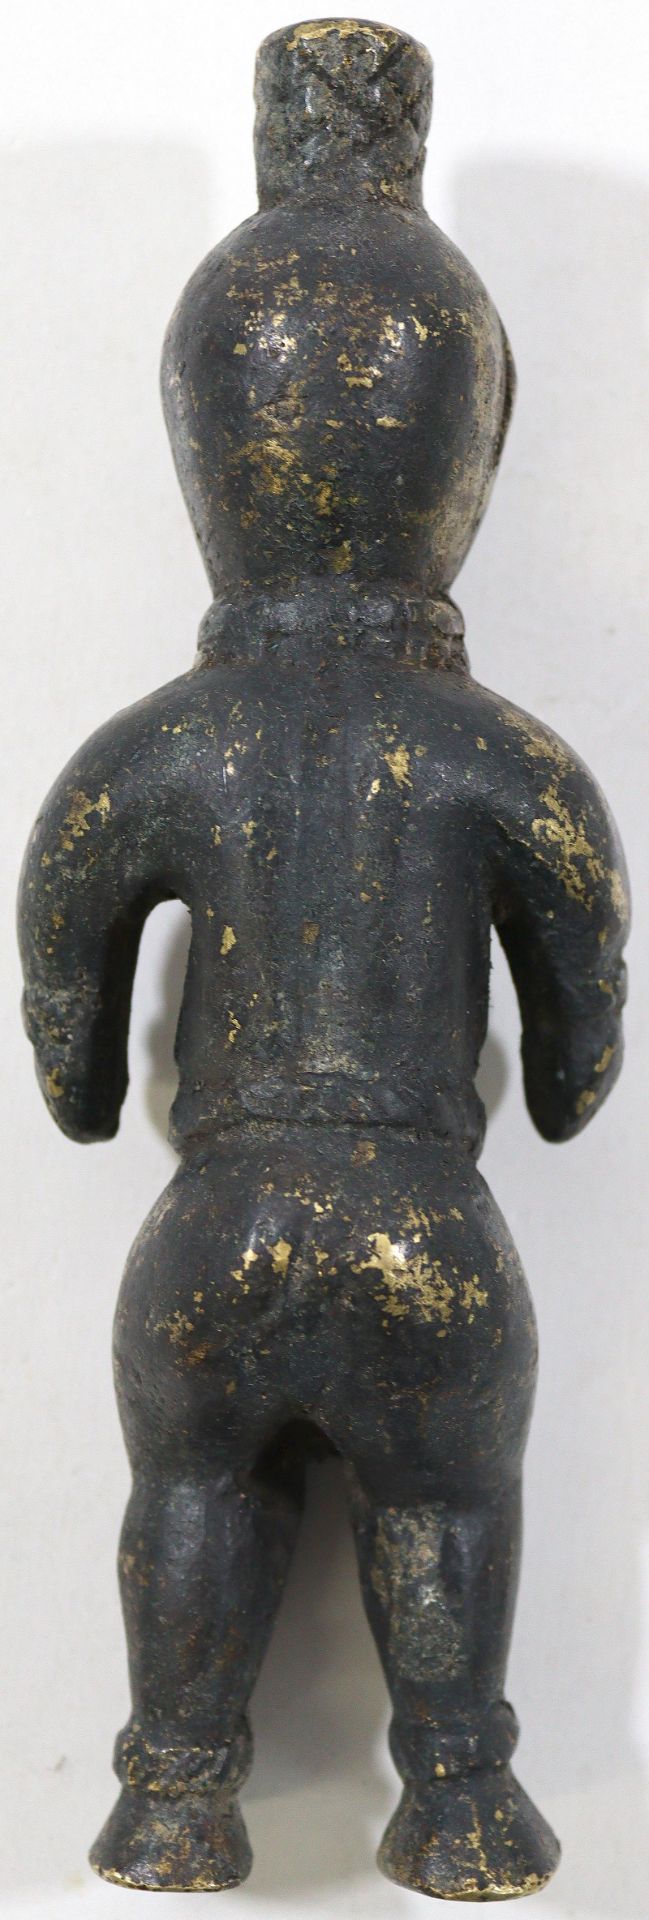 Bronzefigur Elfenbeinküste. - Image 2 of 2